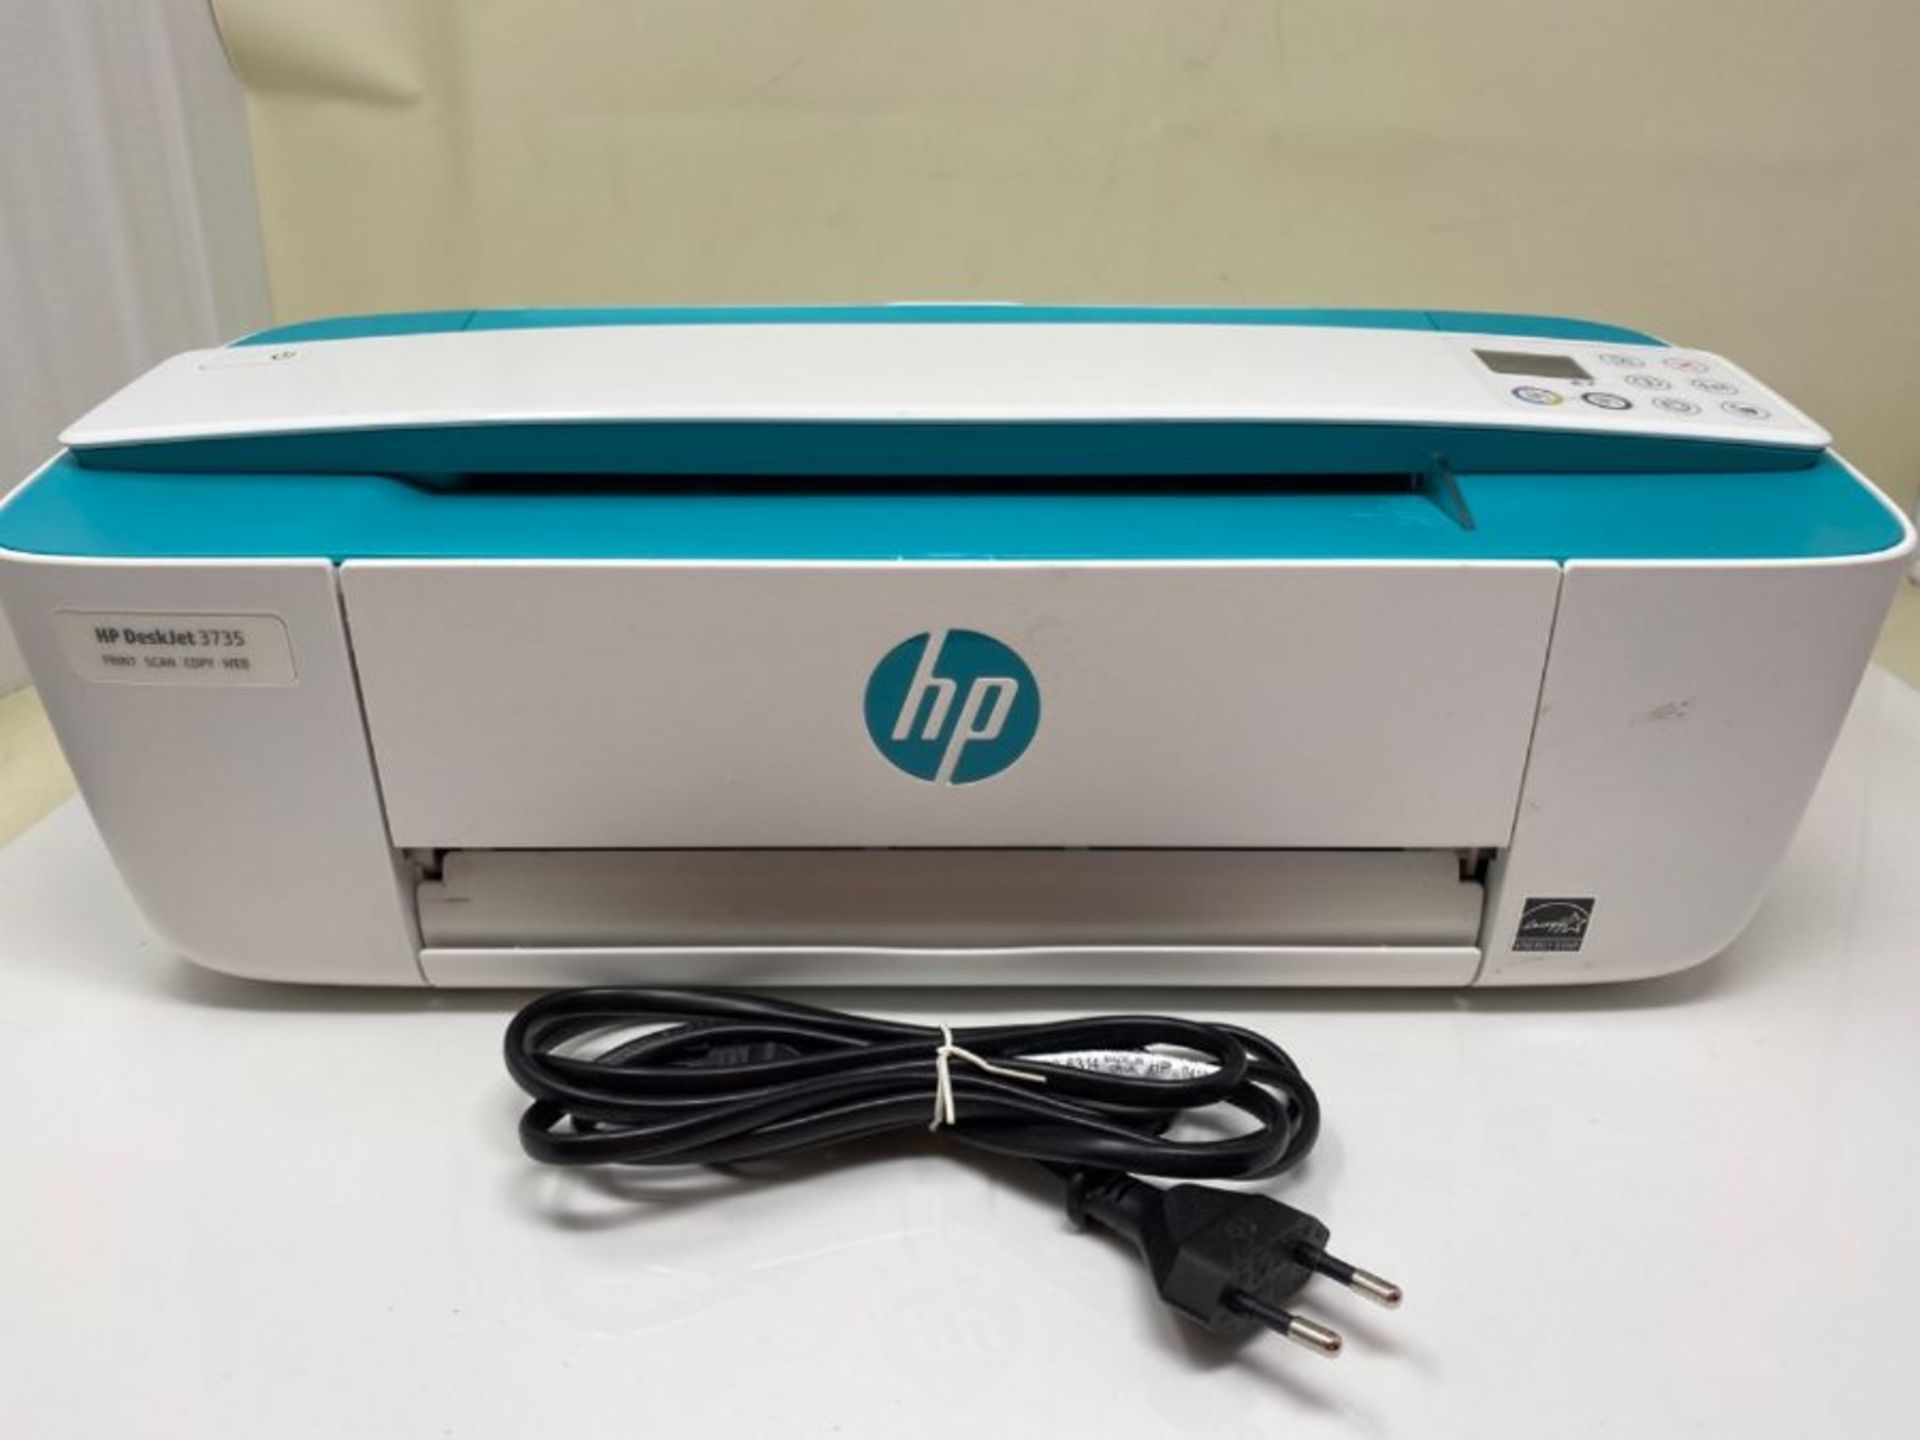 HP Deskjet 3735 AIO Multifunctional Printer - Image 2 of 2